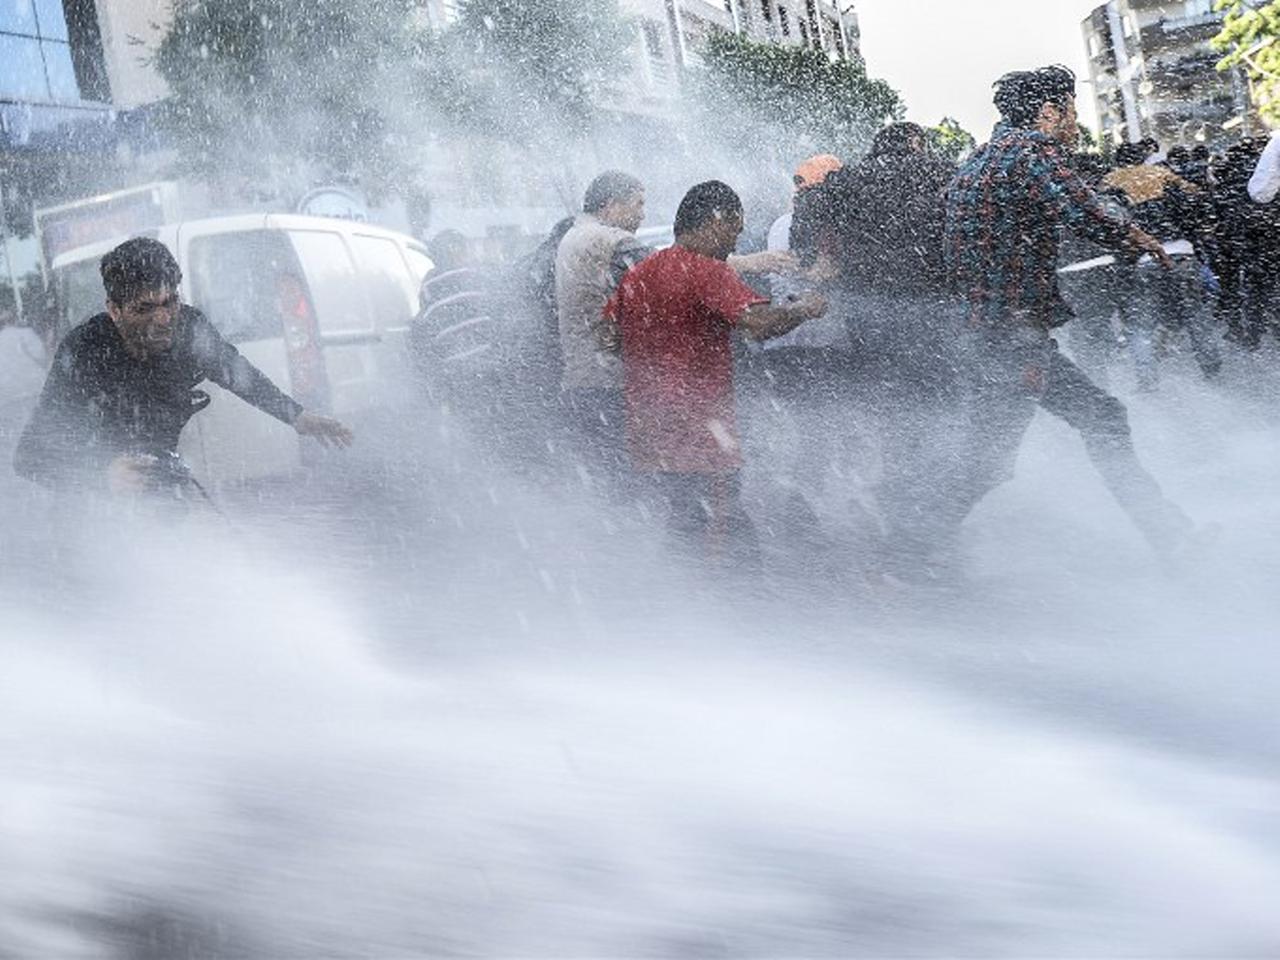 Wasserwerfer werden gegen Demonstranten eingesetzt.